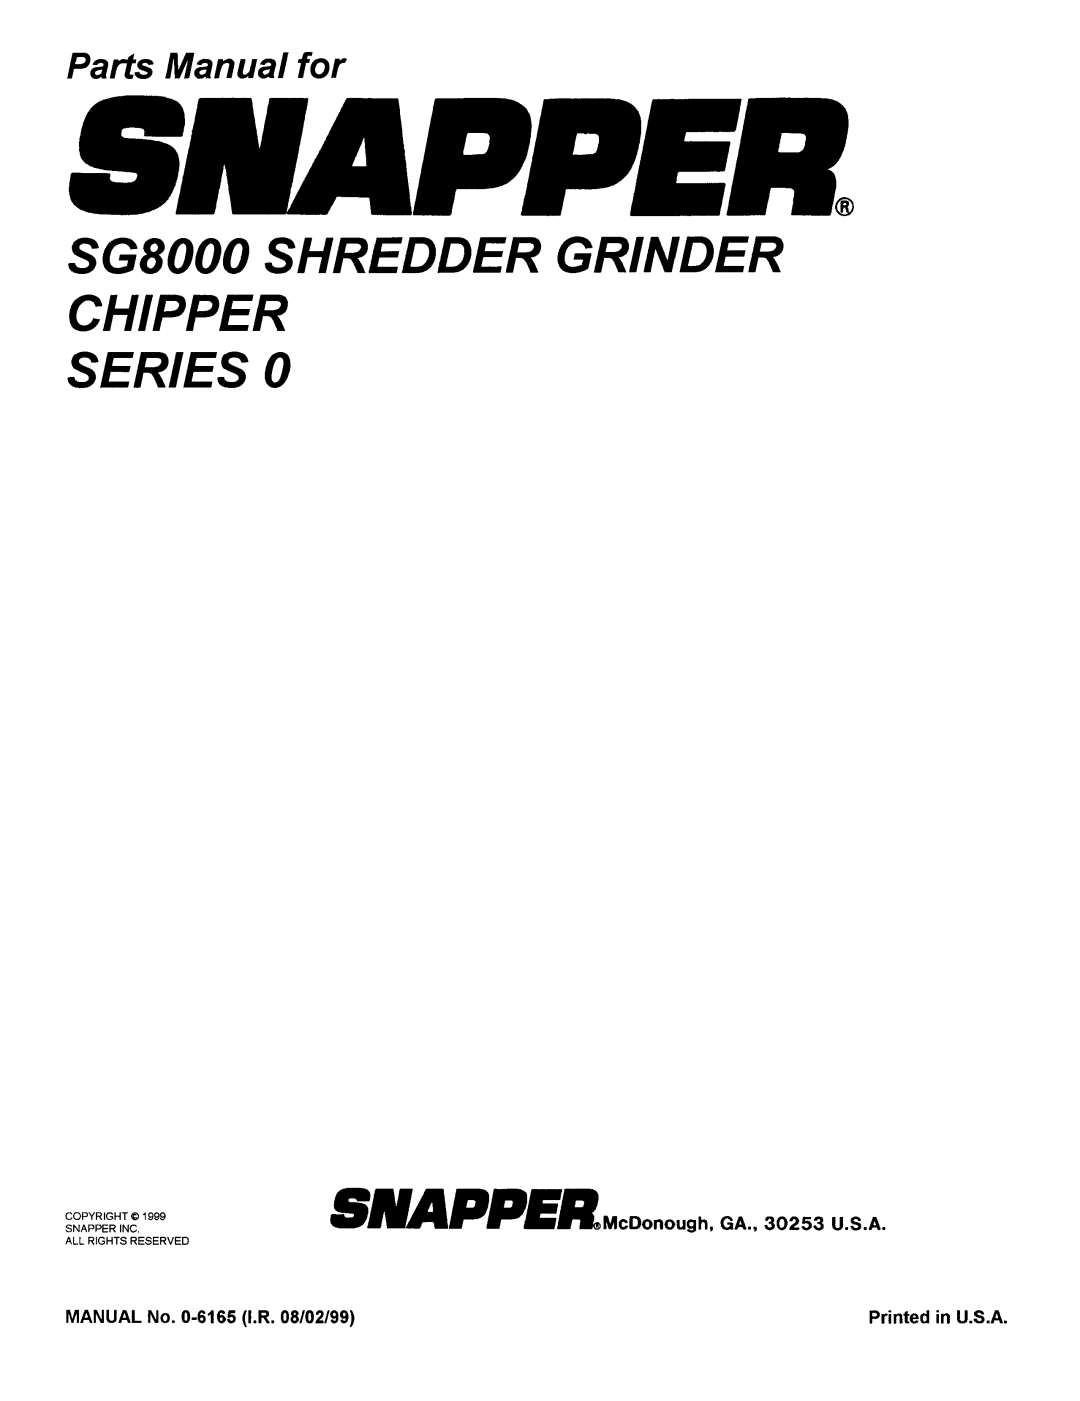 Snapper SG8000 manual 